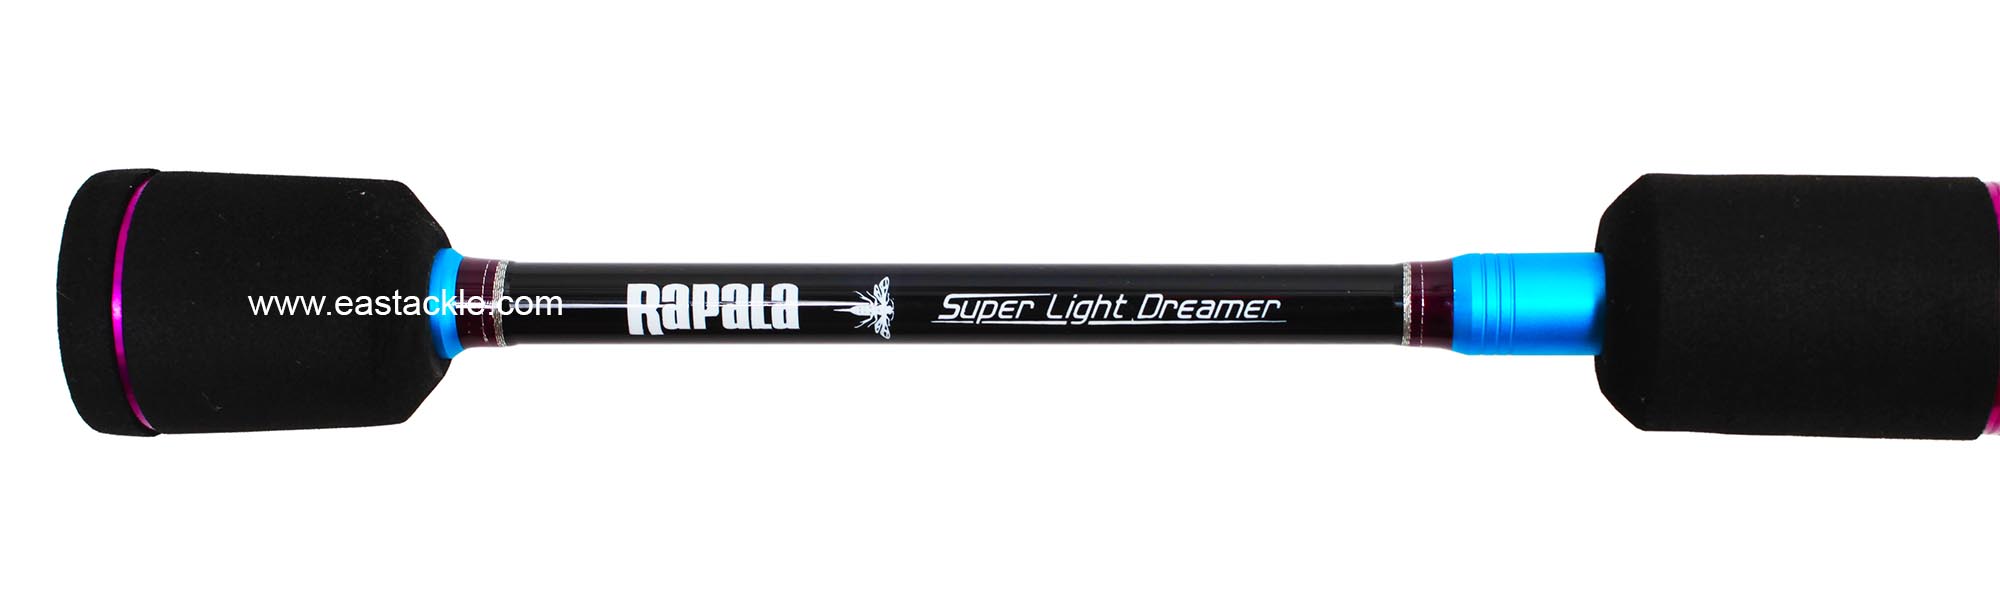 Rapala - Super Light Dreamer - VPS662 - VESPIDA - Spinning Rod - Split Grip Section  (Top View) | Eastackle